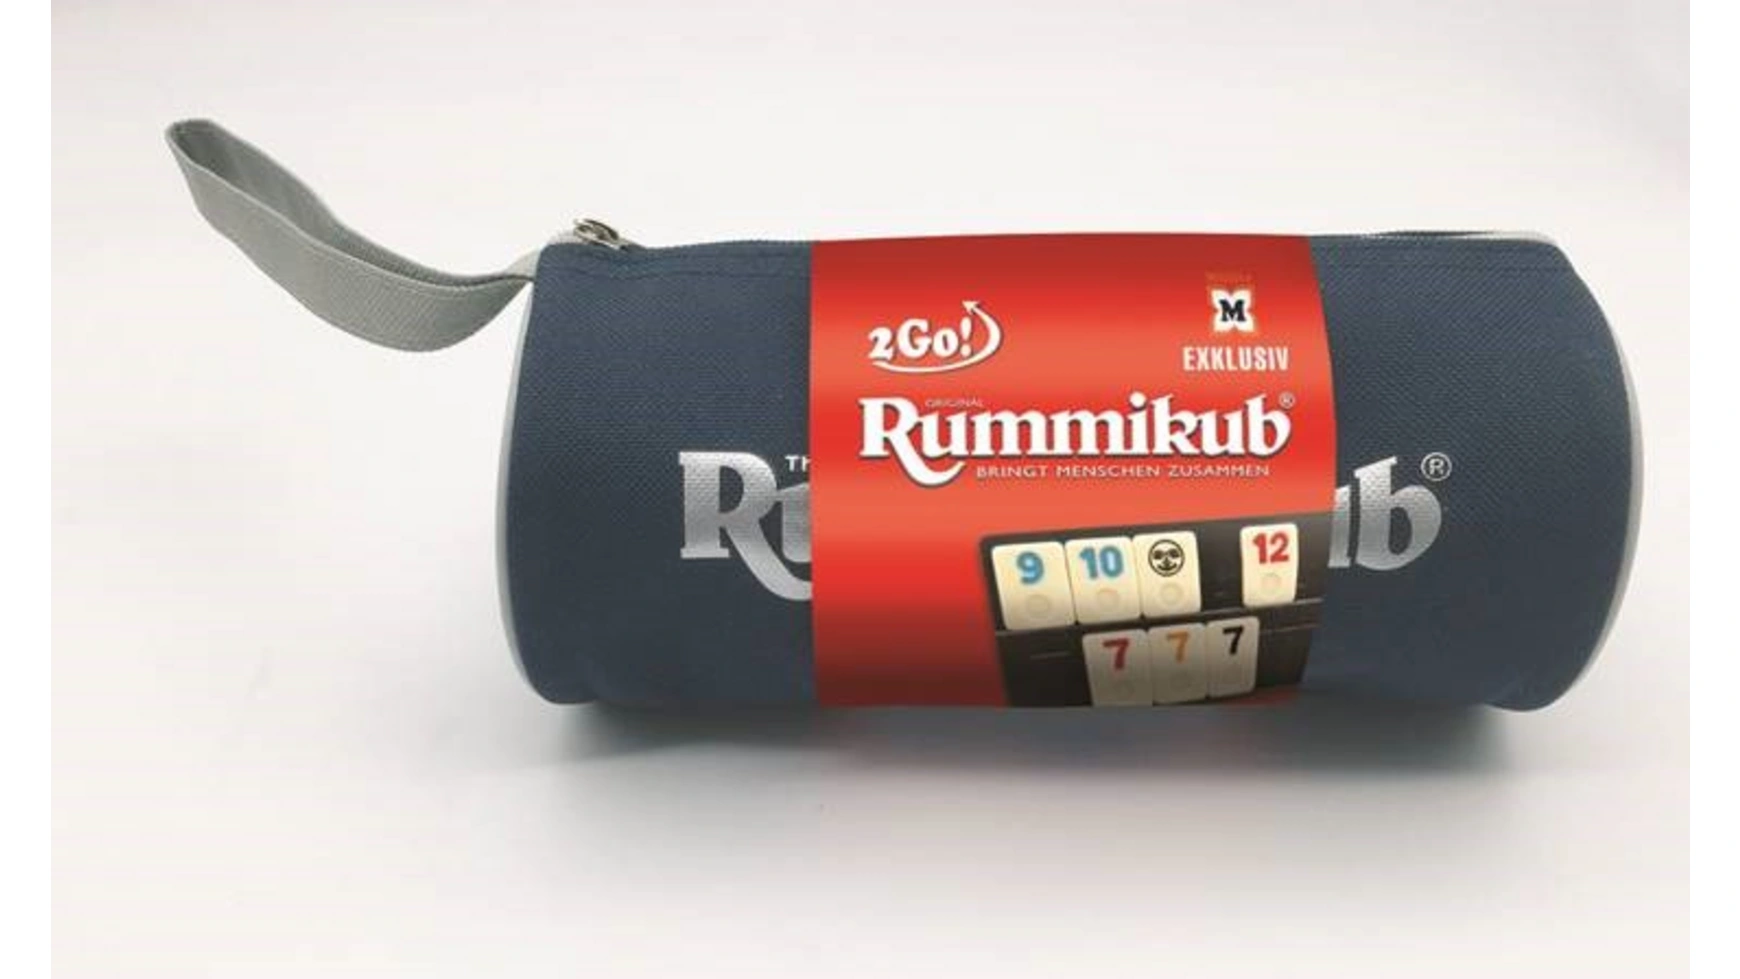 Jumbo Spiele оригинальный Rummikub 2 go эксклюзивно для Müller